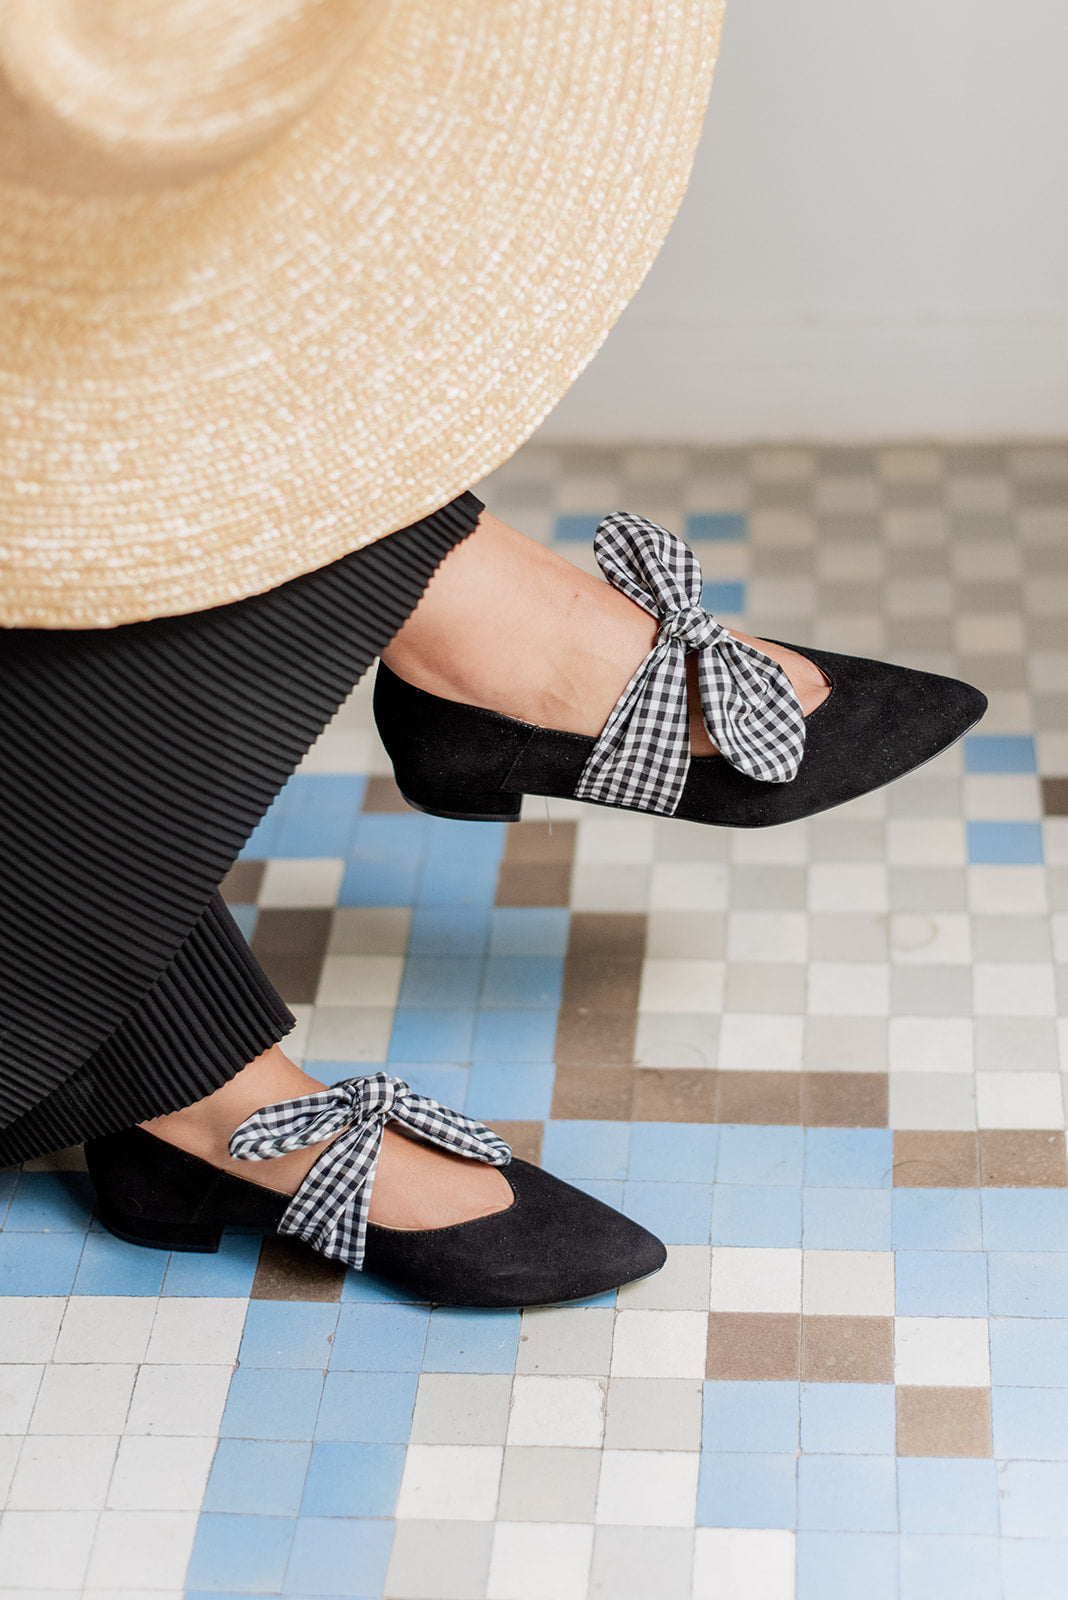 Matilda Negro Vichy-bailarinas-ante, bailarinas, matilda, tacón de 2, vichy, zapato plano, zapatos de color negro-Loovshoes